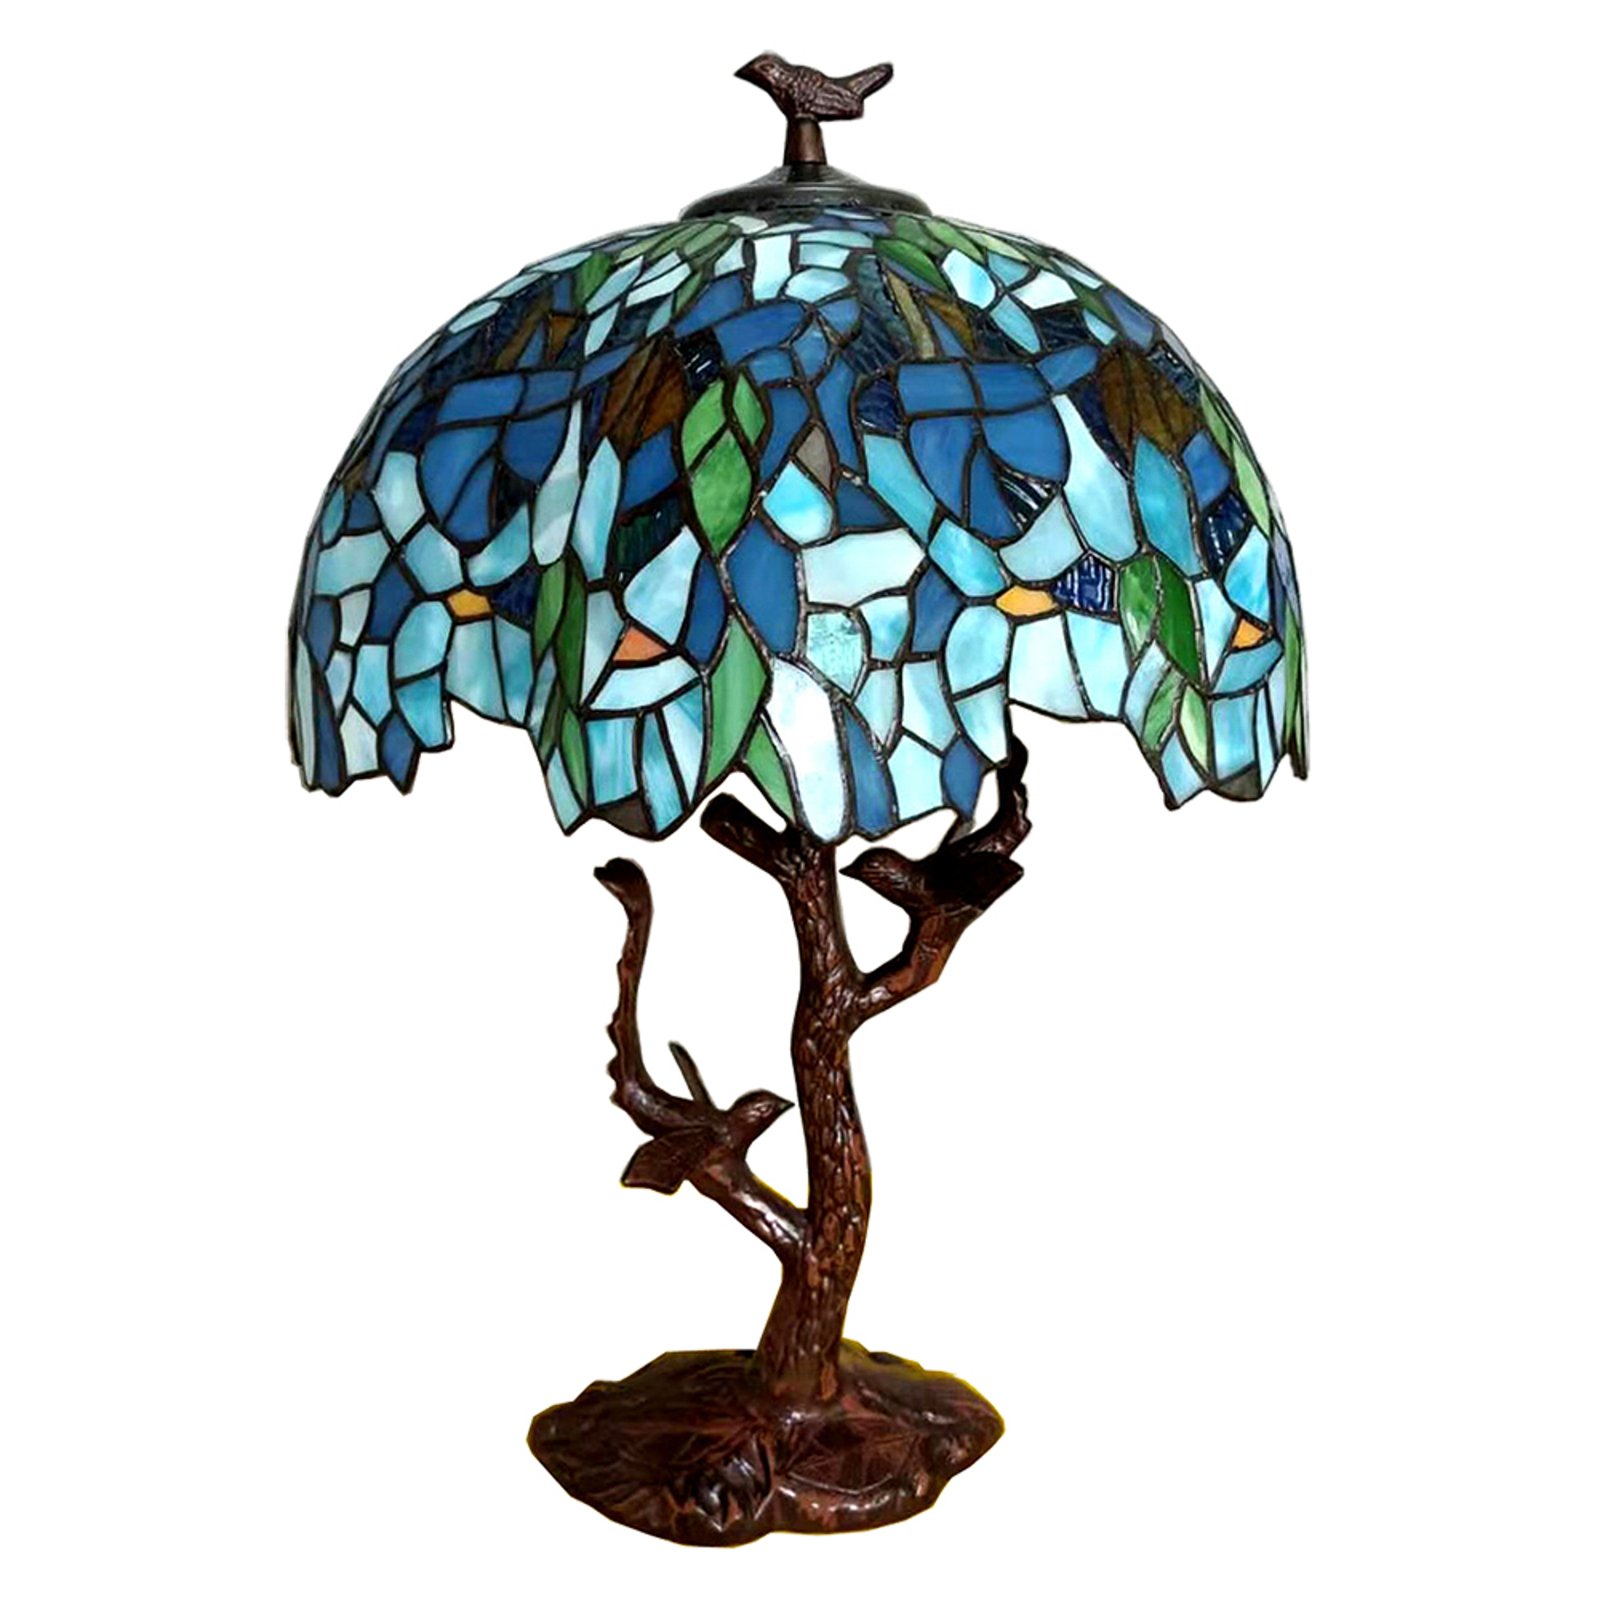 Tischlampe 5LL-6115 im Tiffany-Stil